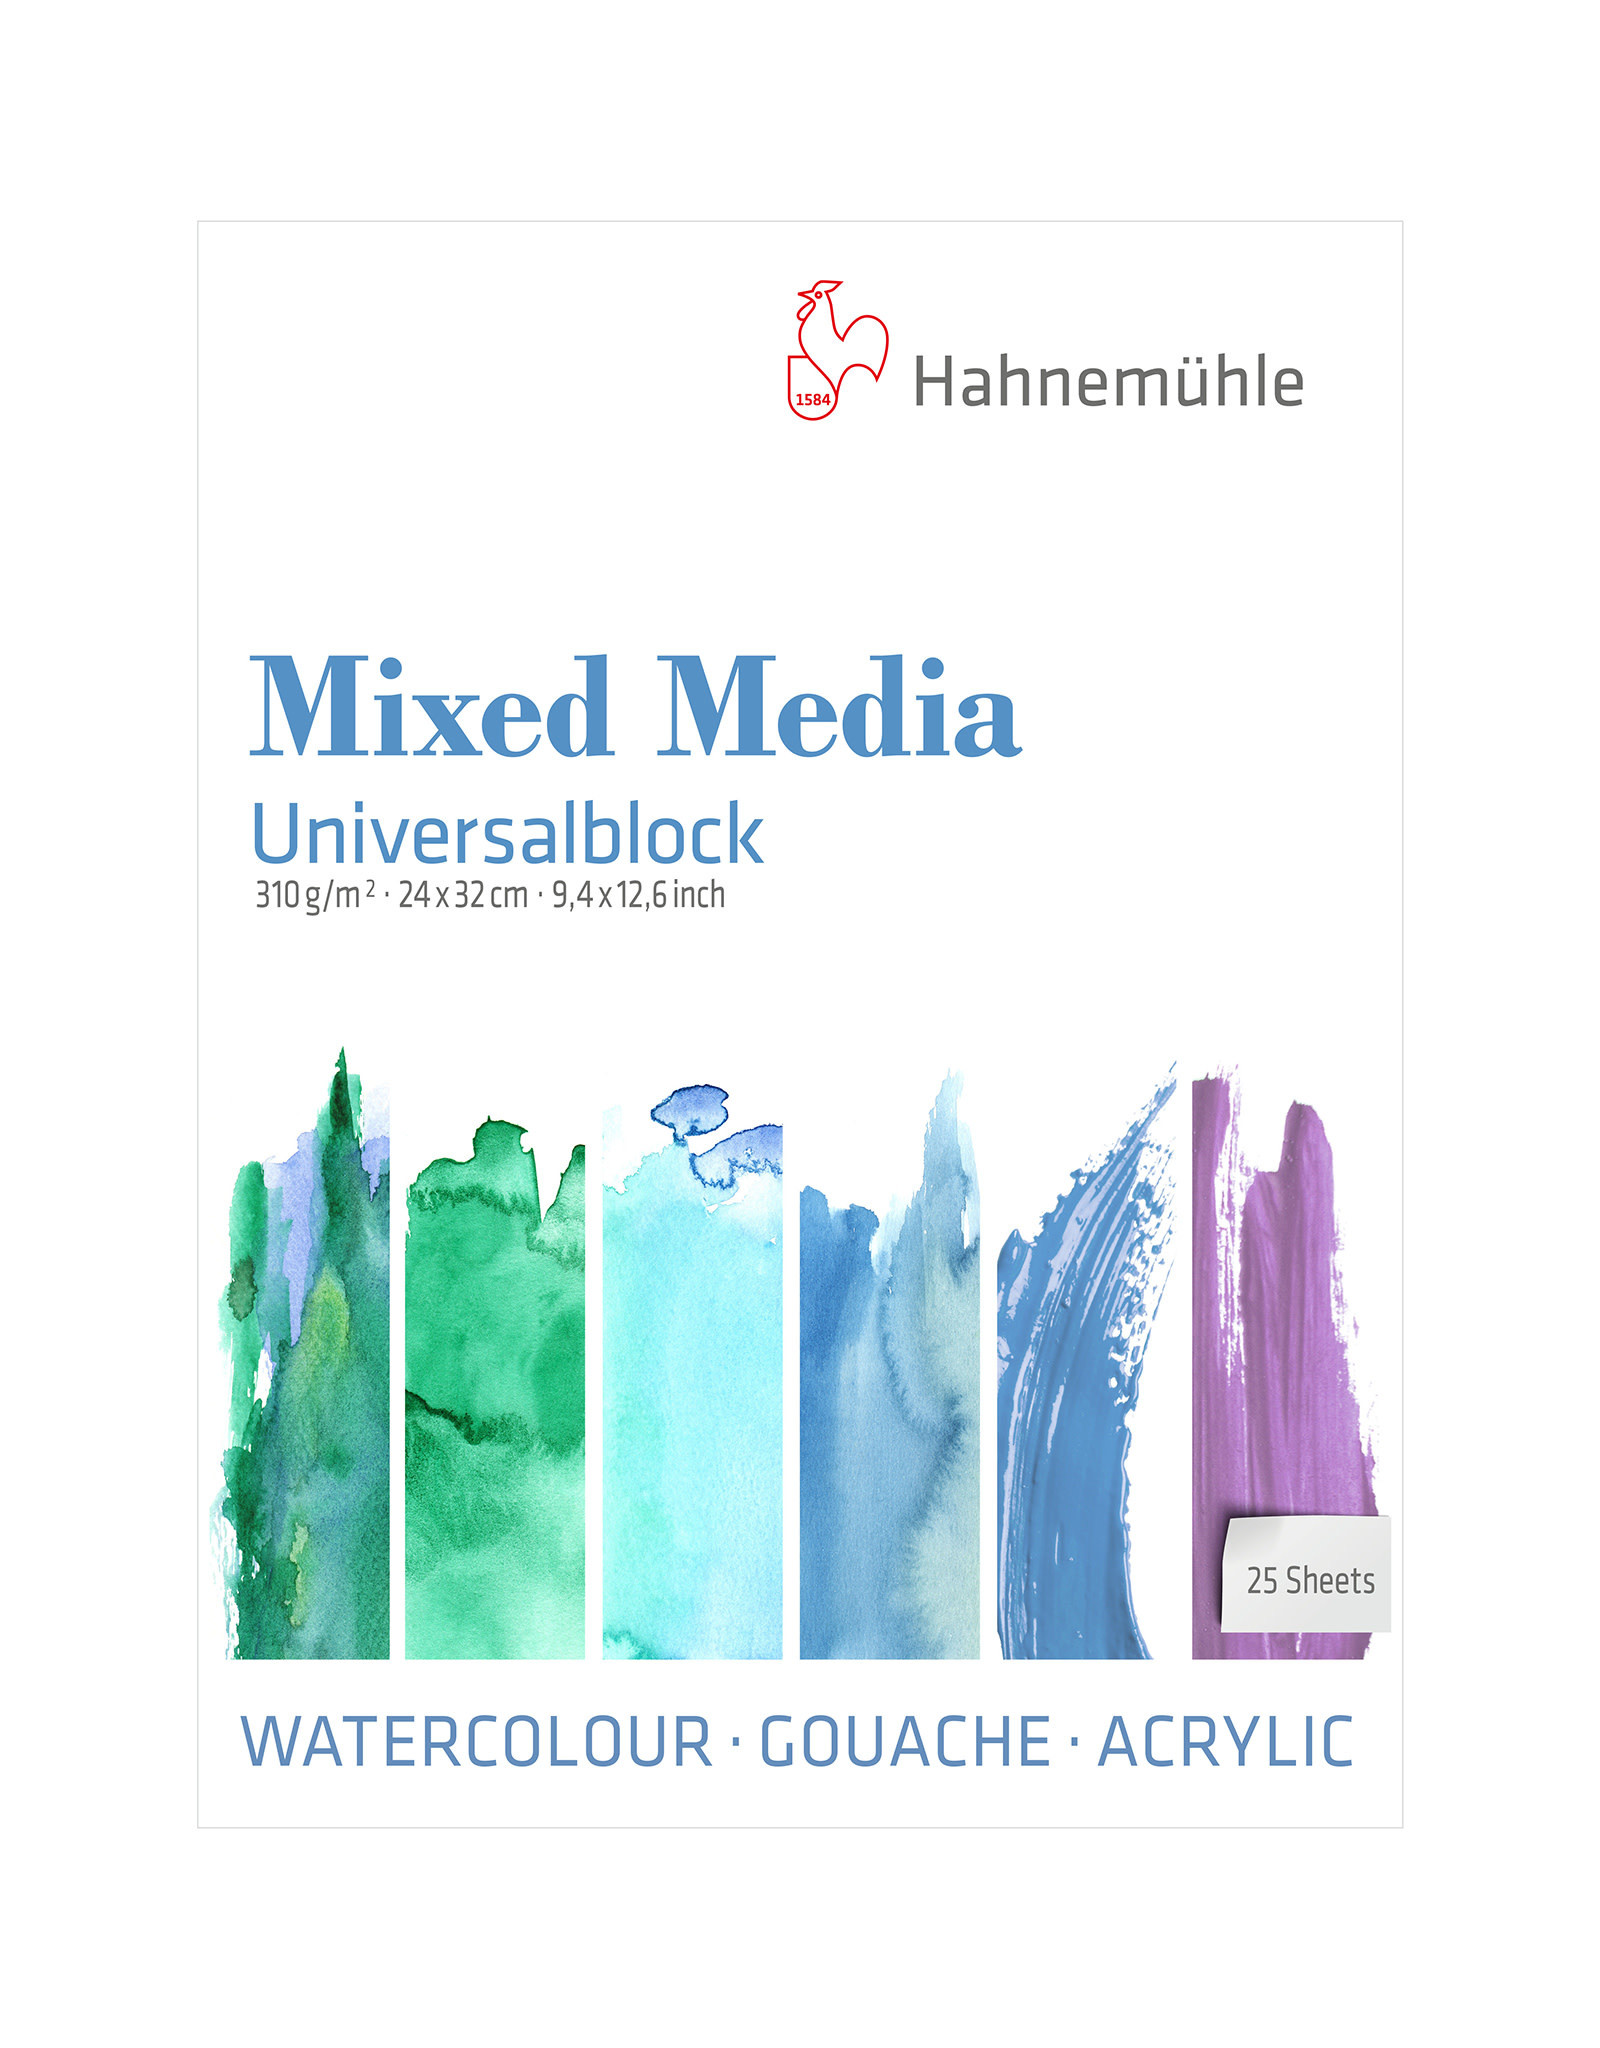 Hahnemuhle Hahnemuhle Mixed Media Pad 24cm x 32cm